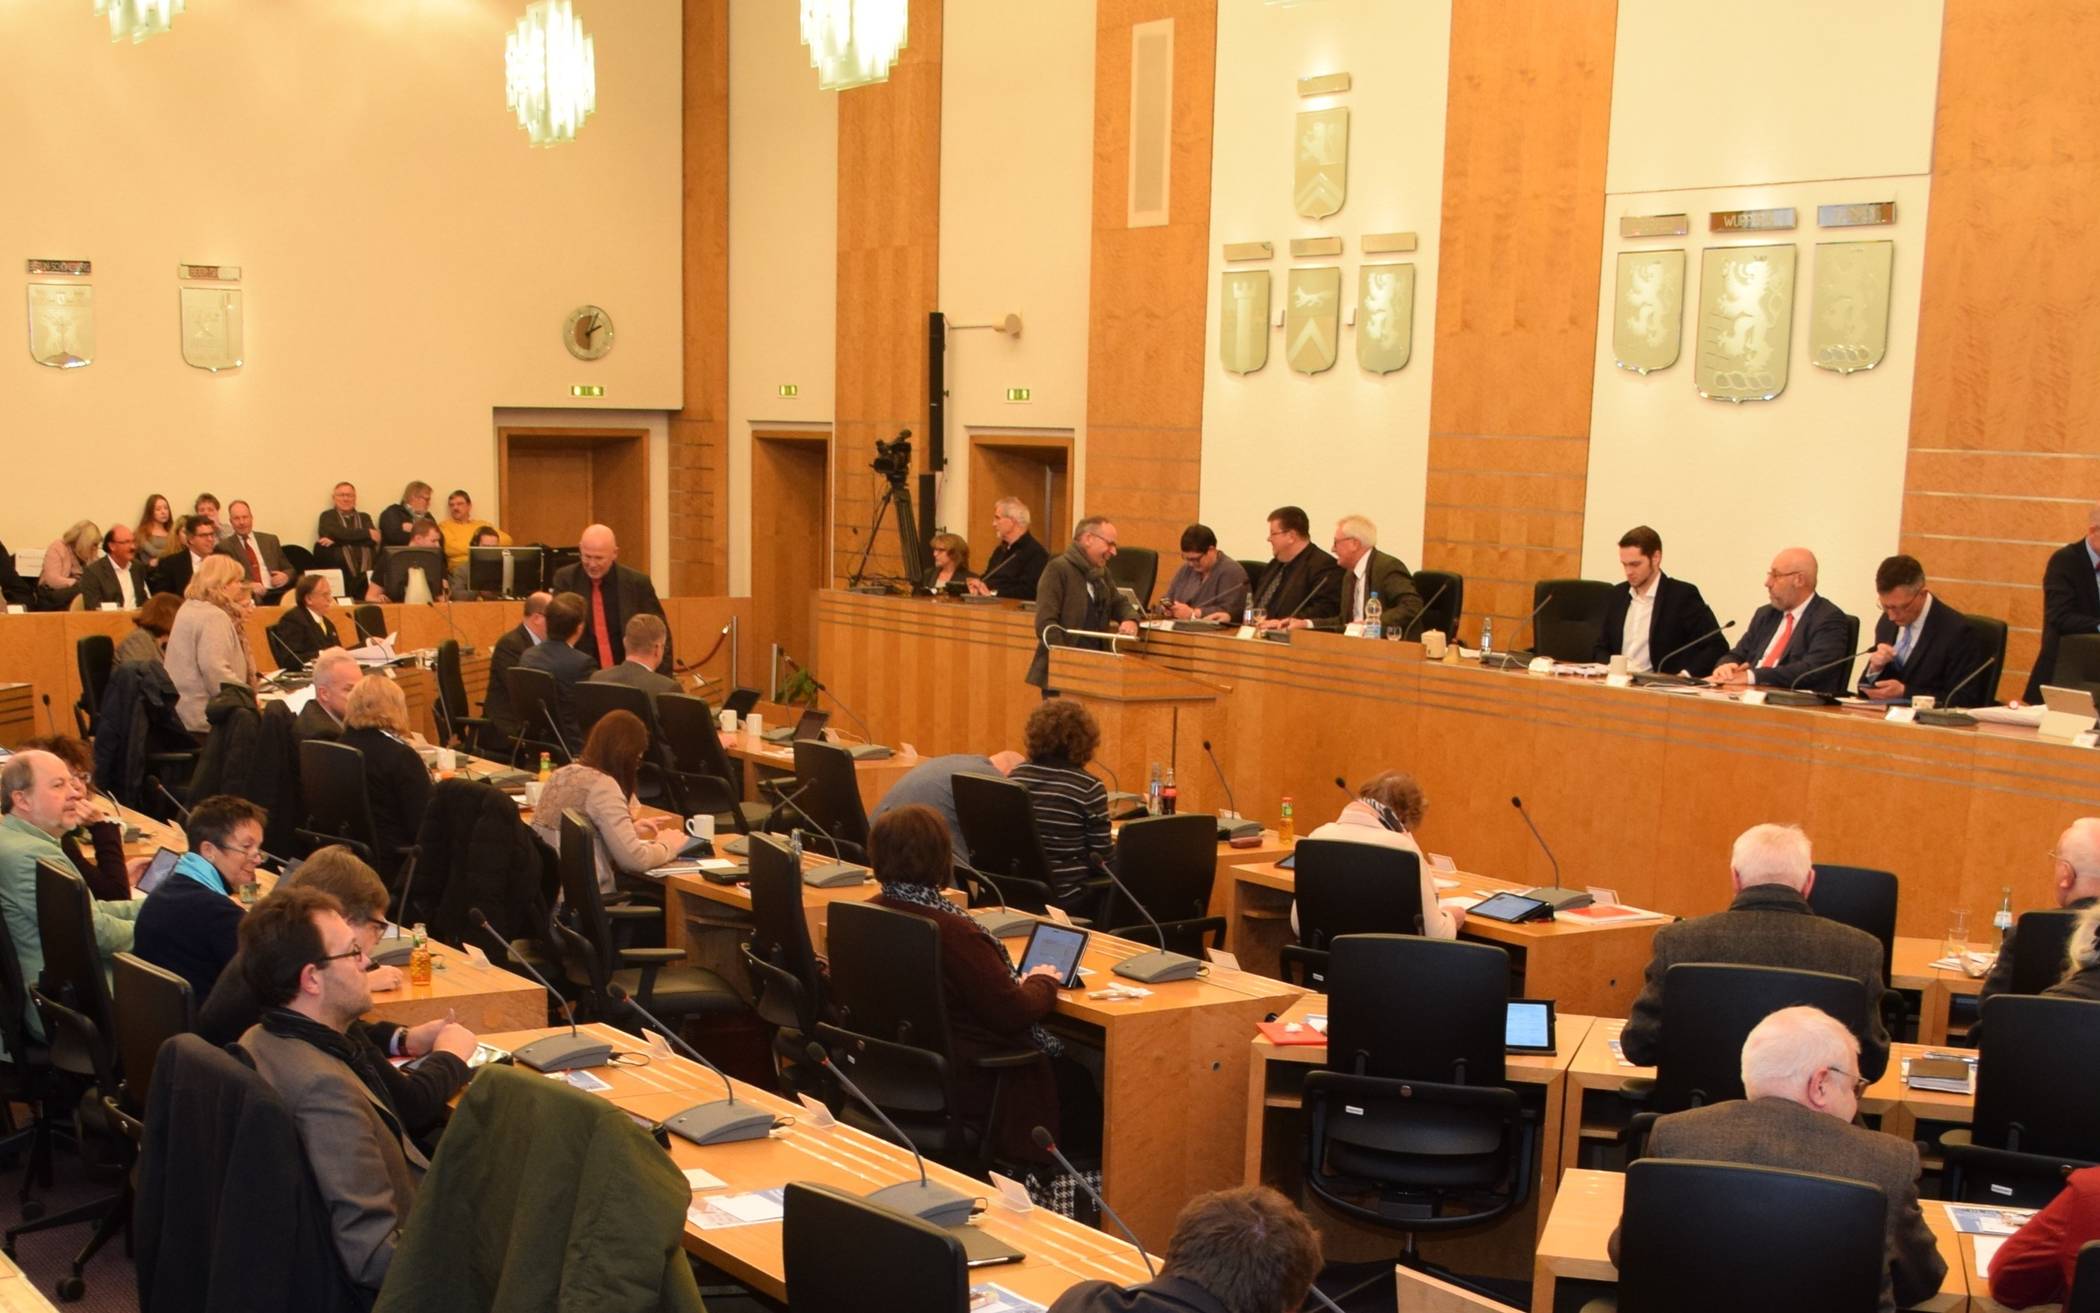  Für eine Sitzung des Stadtrates in Corona-Zeiten ist der Wuppertaler Ratssaal definitiv zu klein. 